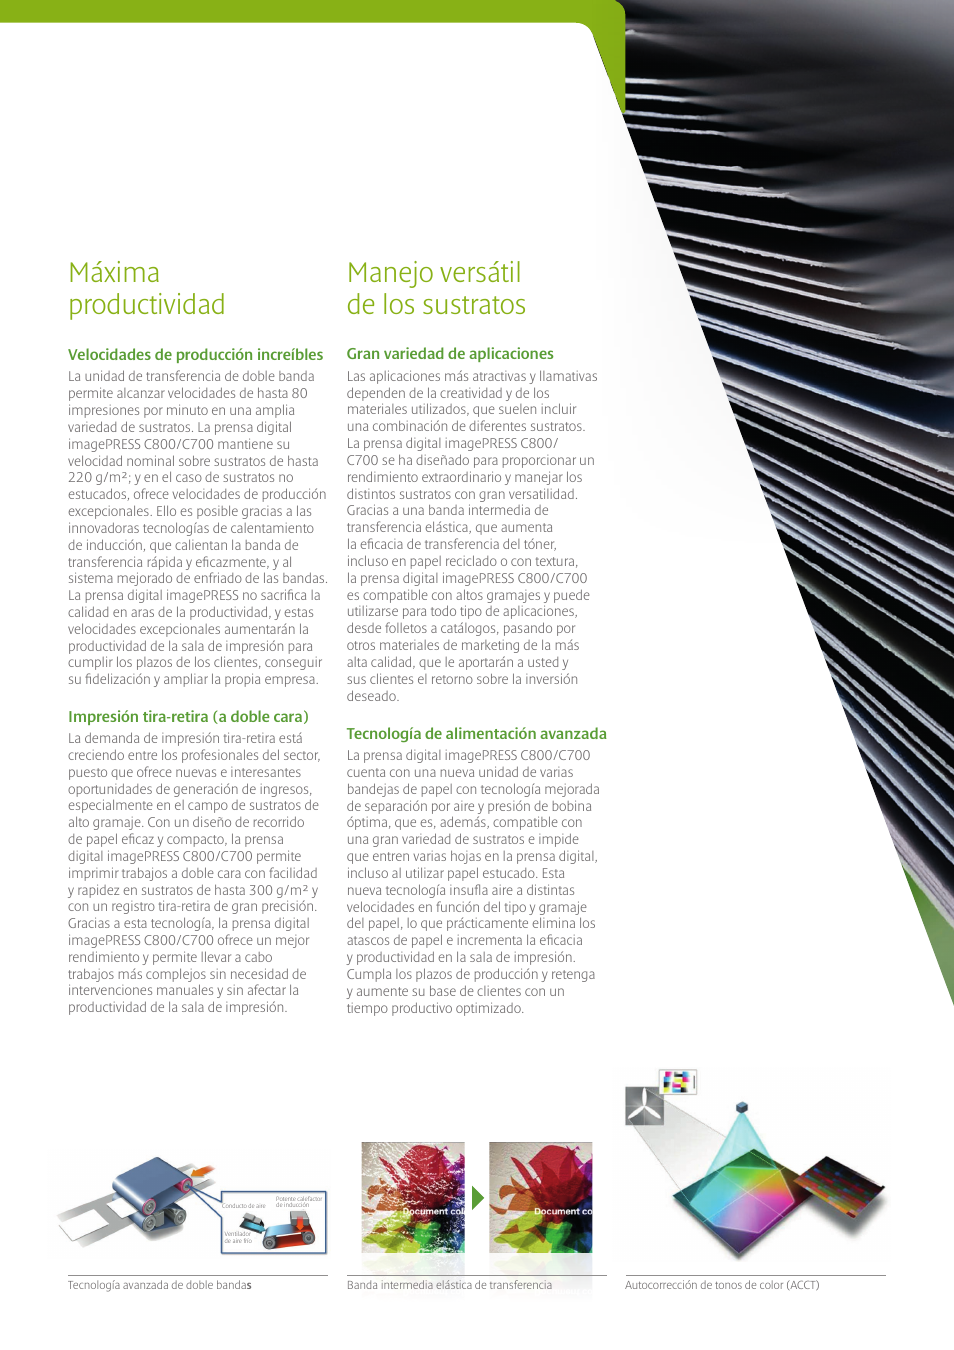 Máxima productividad, Manejo versátil de los sustratos | Canon imagePRESS C800 Manual del usuario | Página 6 / 12